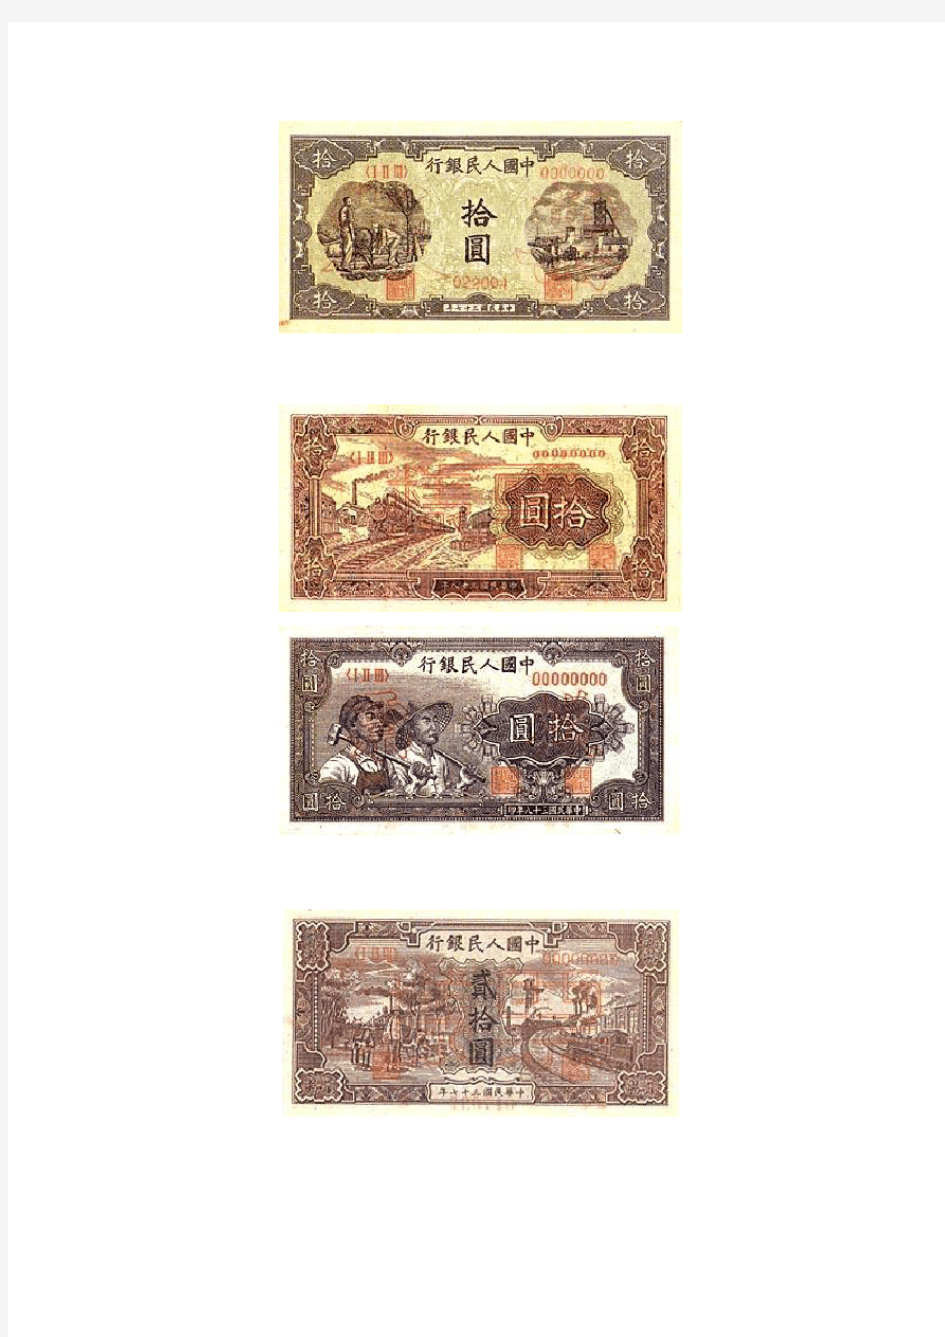 1949年 以来发行的五套人民币图集